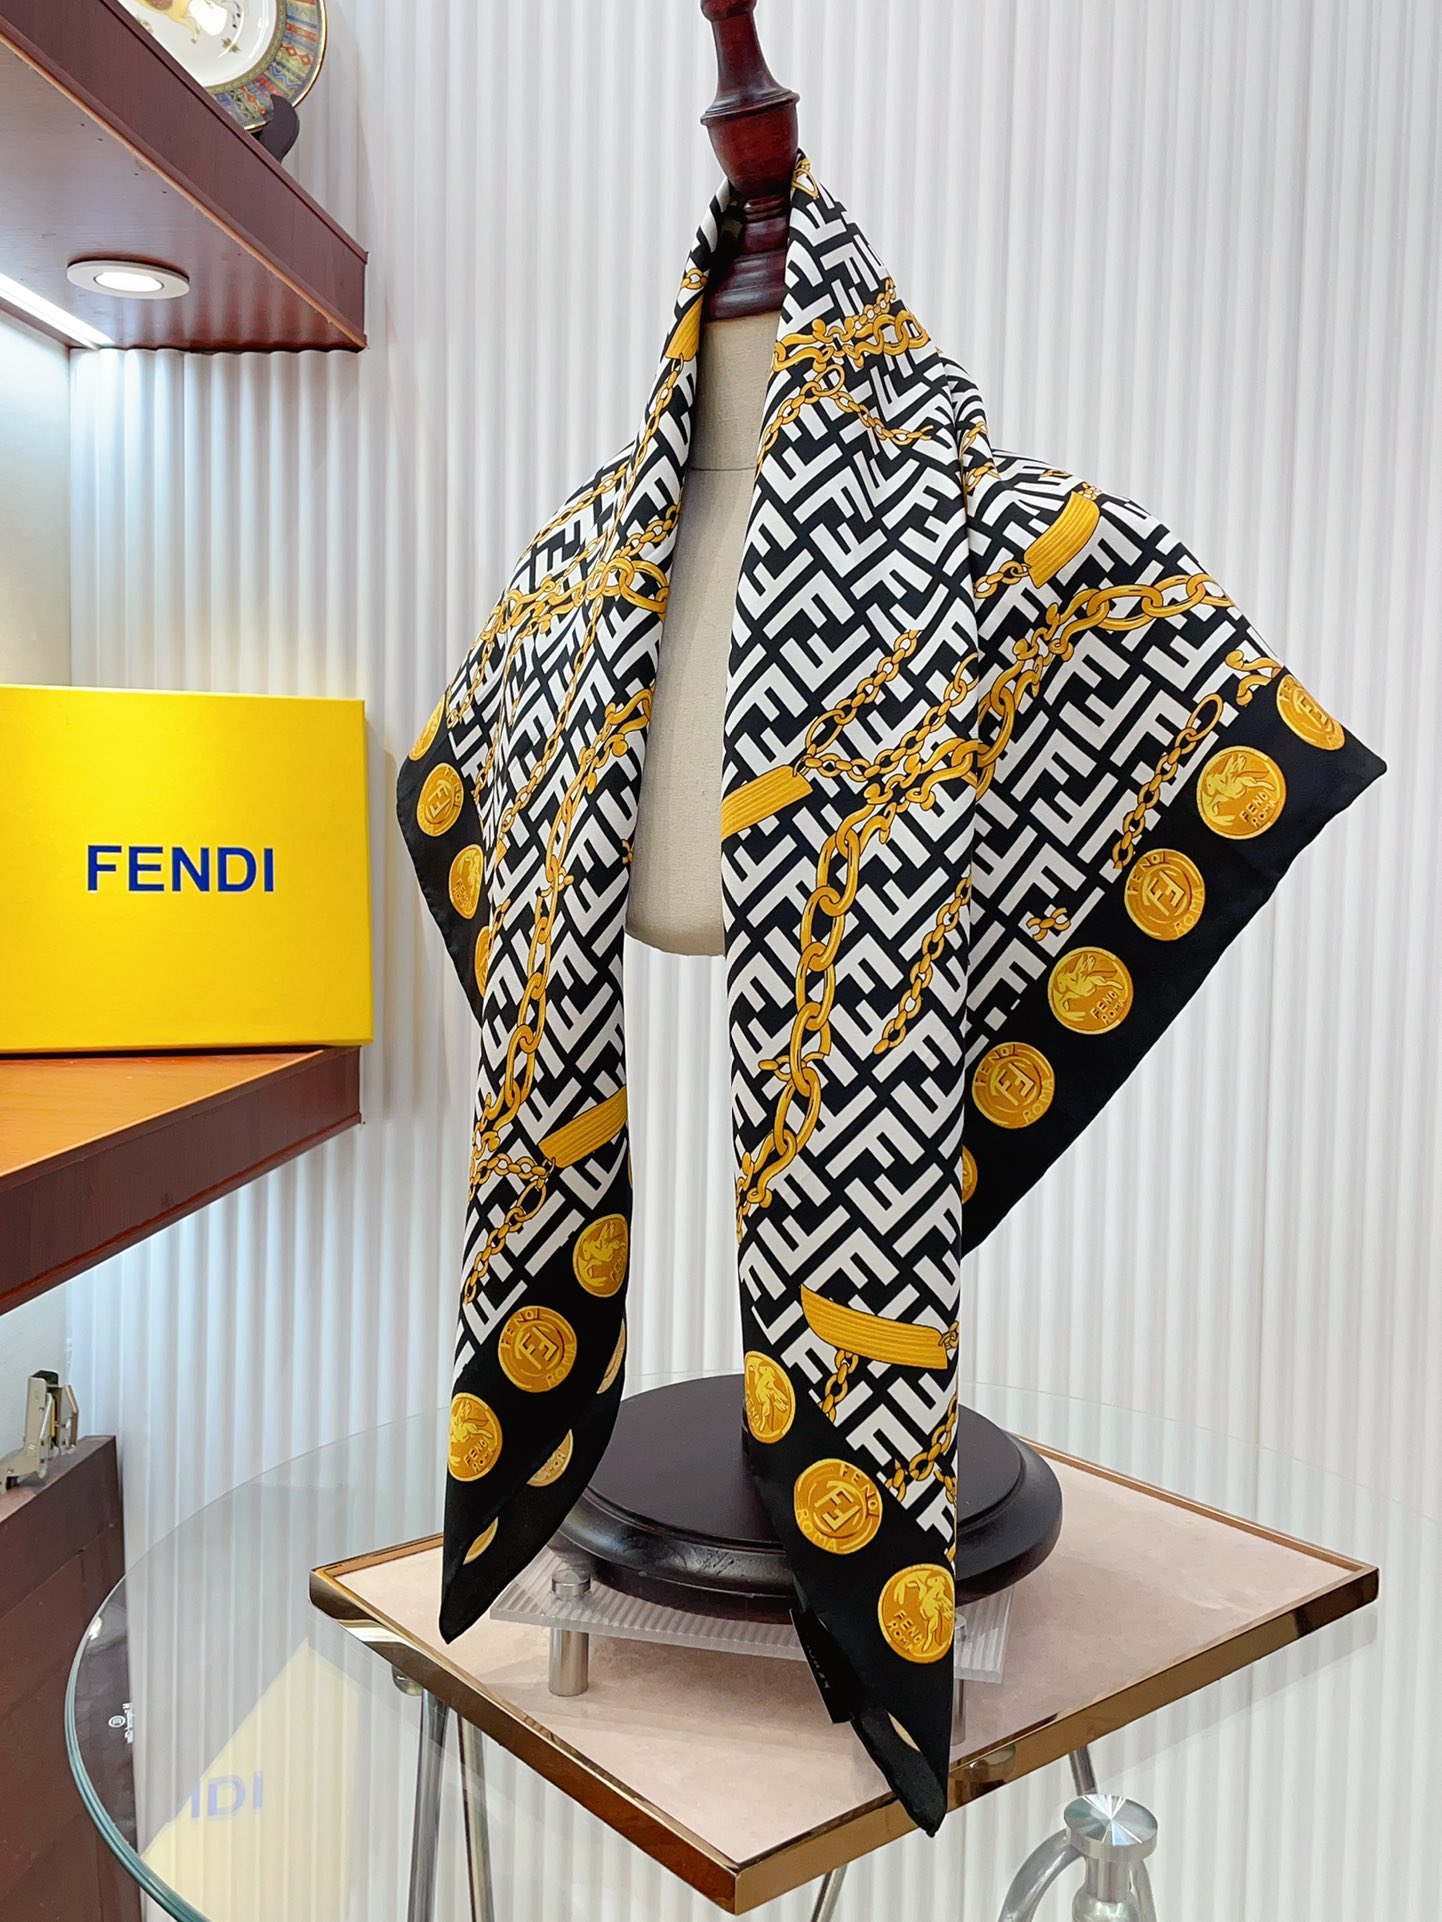 出彩点睛️最新款FENDI官网也是刚刚上架的️香港贸易公司的订单！配色很特别独有的调调.F家的丝巾真的光